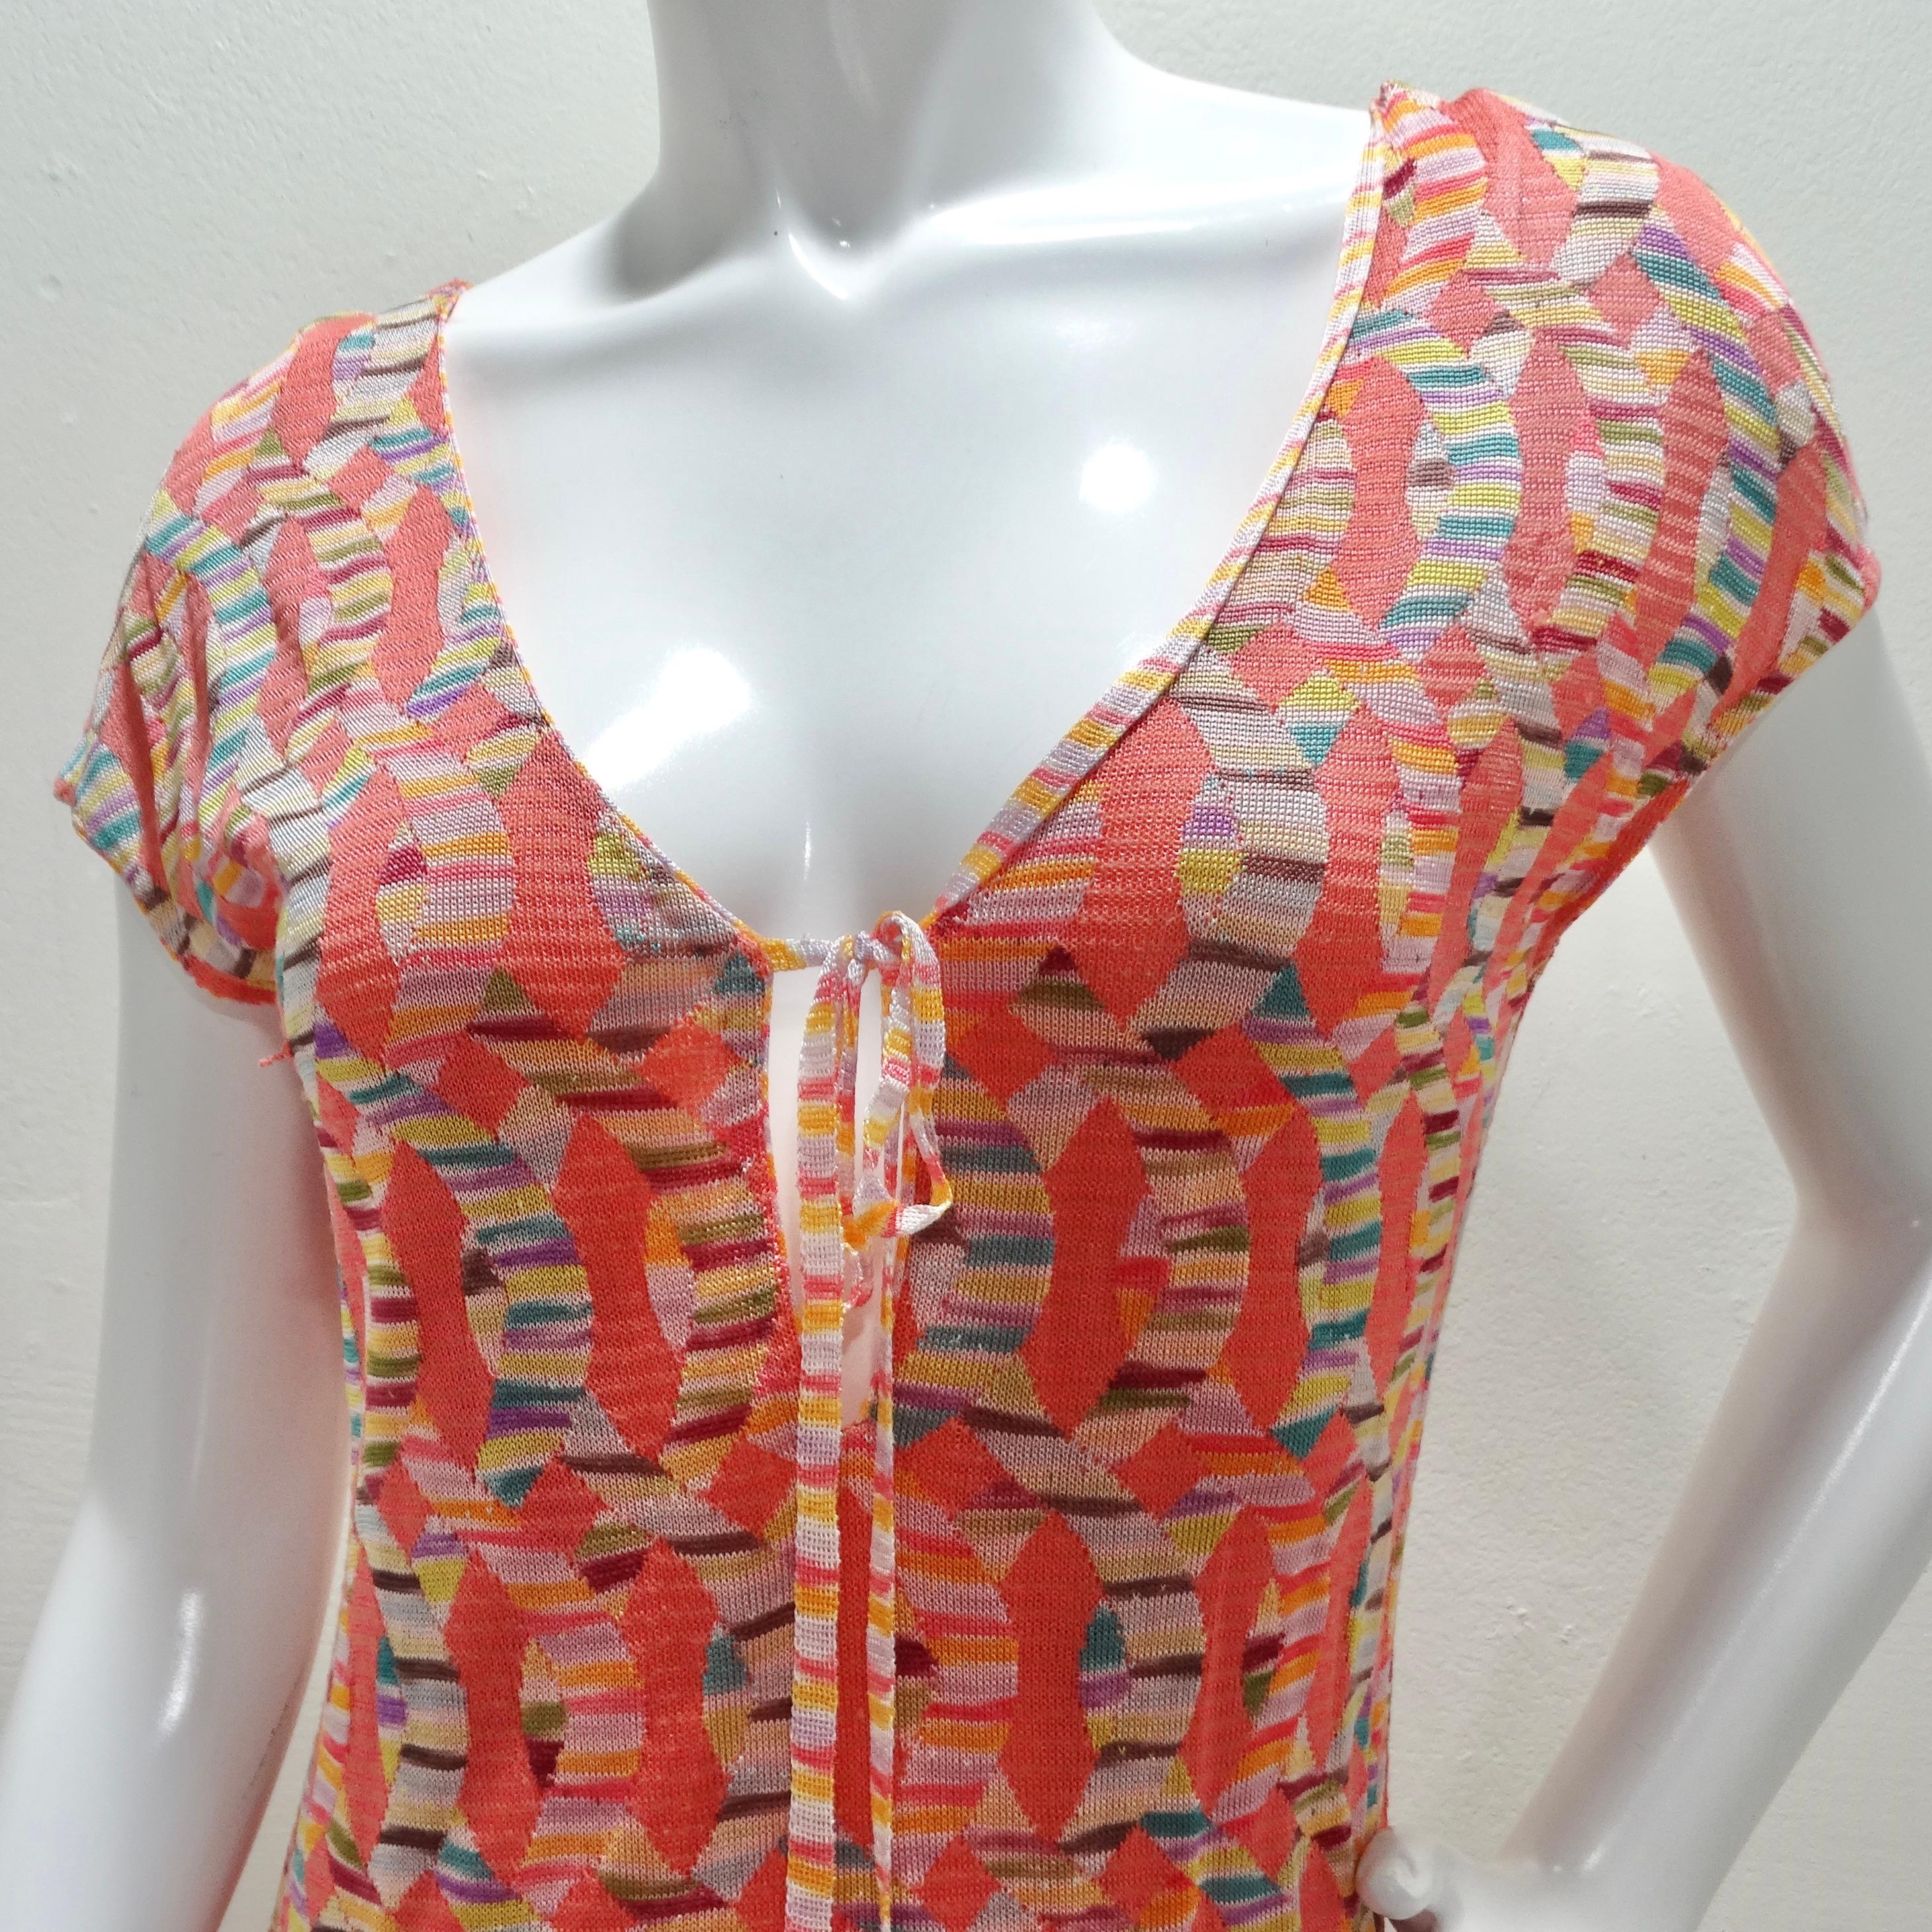 Entrez dans une élégance vibrante avec la robe à nouer en trou de serrure en tricot multicolore Missoni 1990, une pièce vintage captivante qui résume l'essence du style emblématique de Missoni.

Confectionnée dans une luxueuse maille imprimée